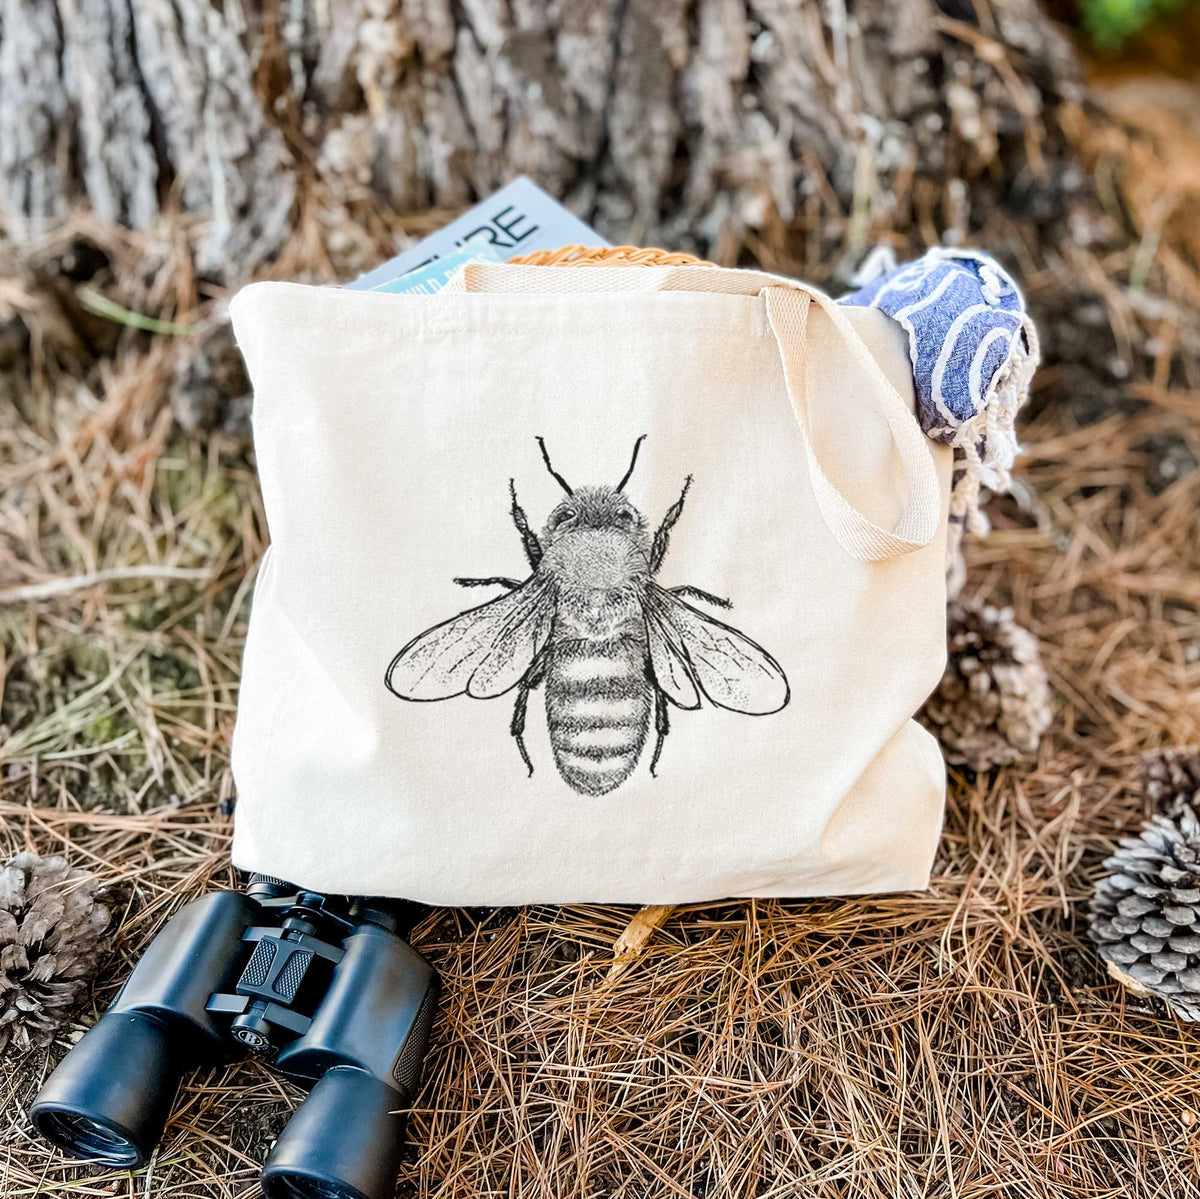 Apis Mellifera - Honey Bee - Tote Bag